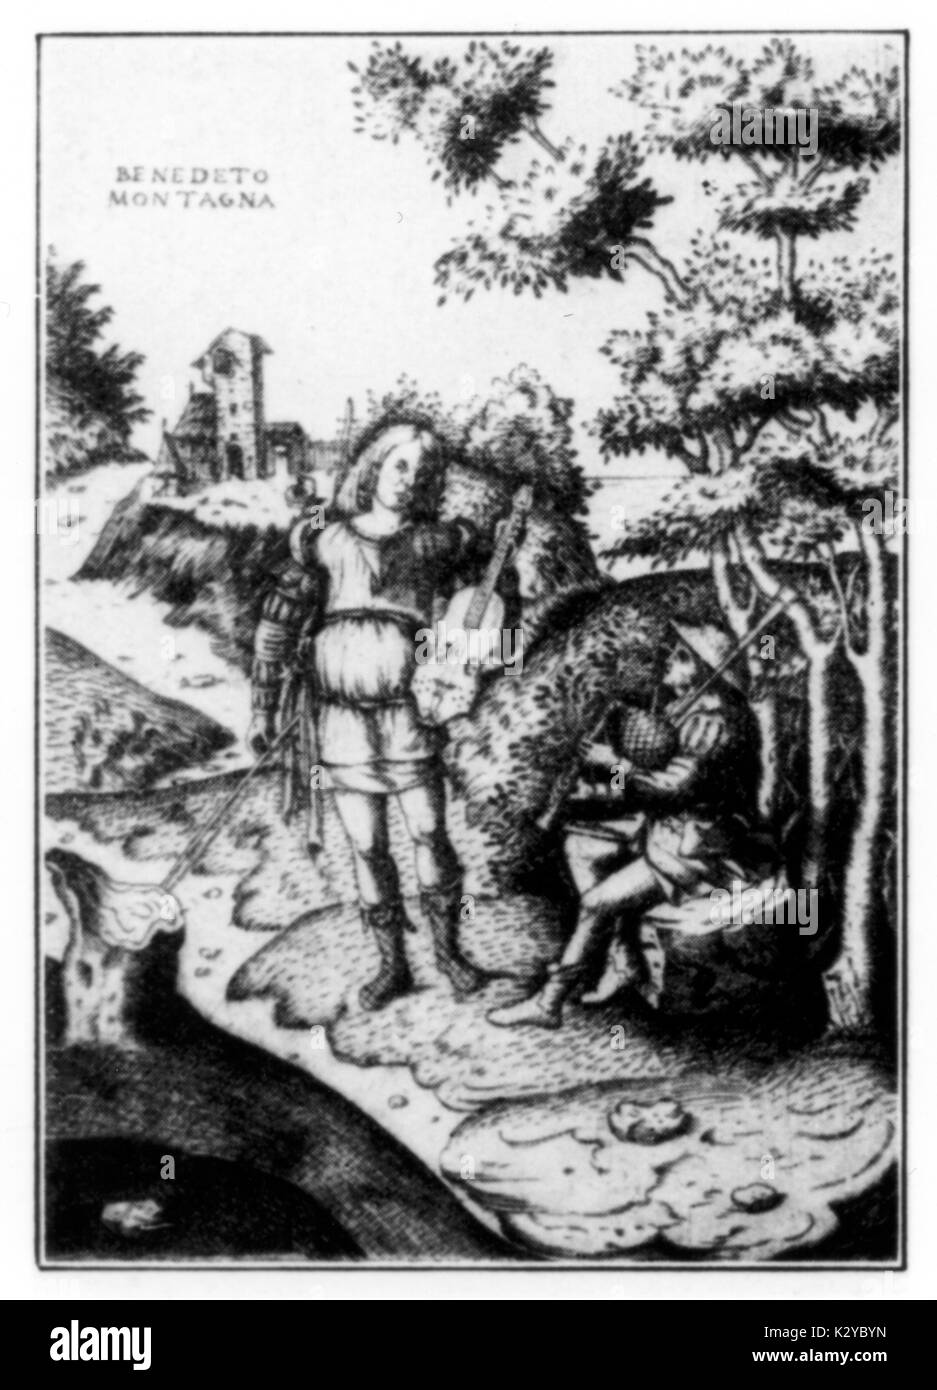 Landschaft mit zwei Musiker, spielen Viola da braccio und Dudelsack. Gravur von Benedetto Montagna (1480-1555 oder 1558). Stockfoto